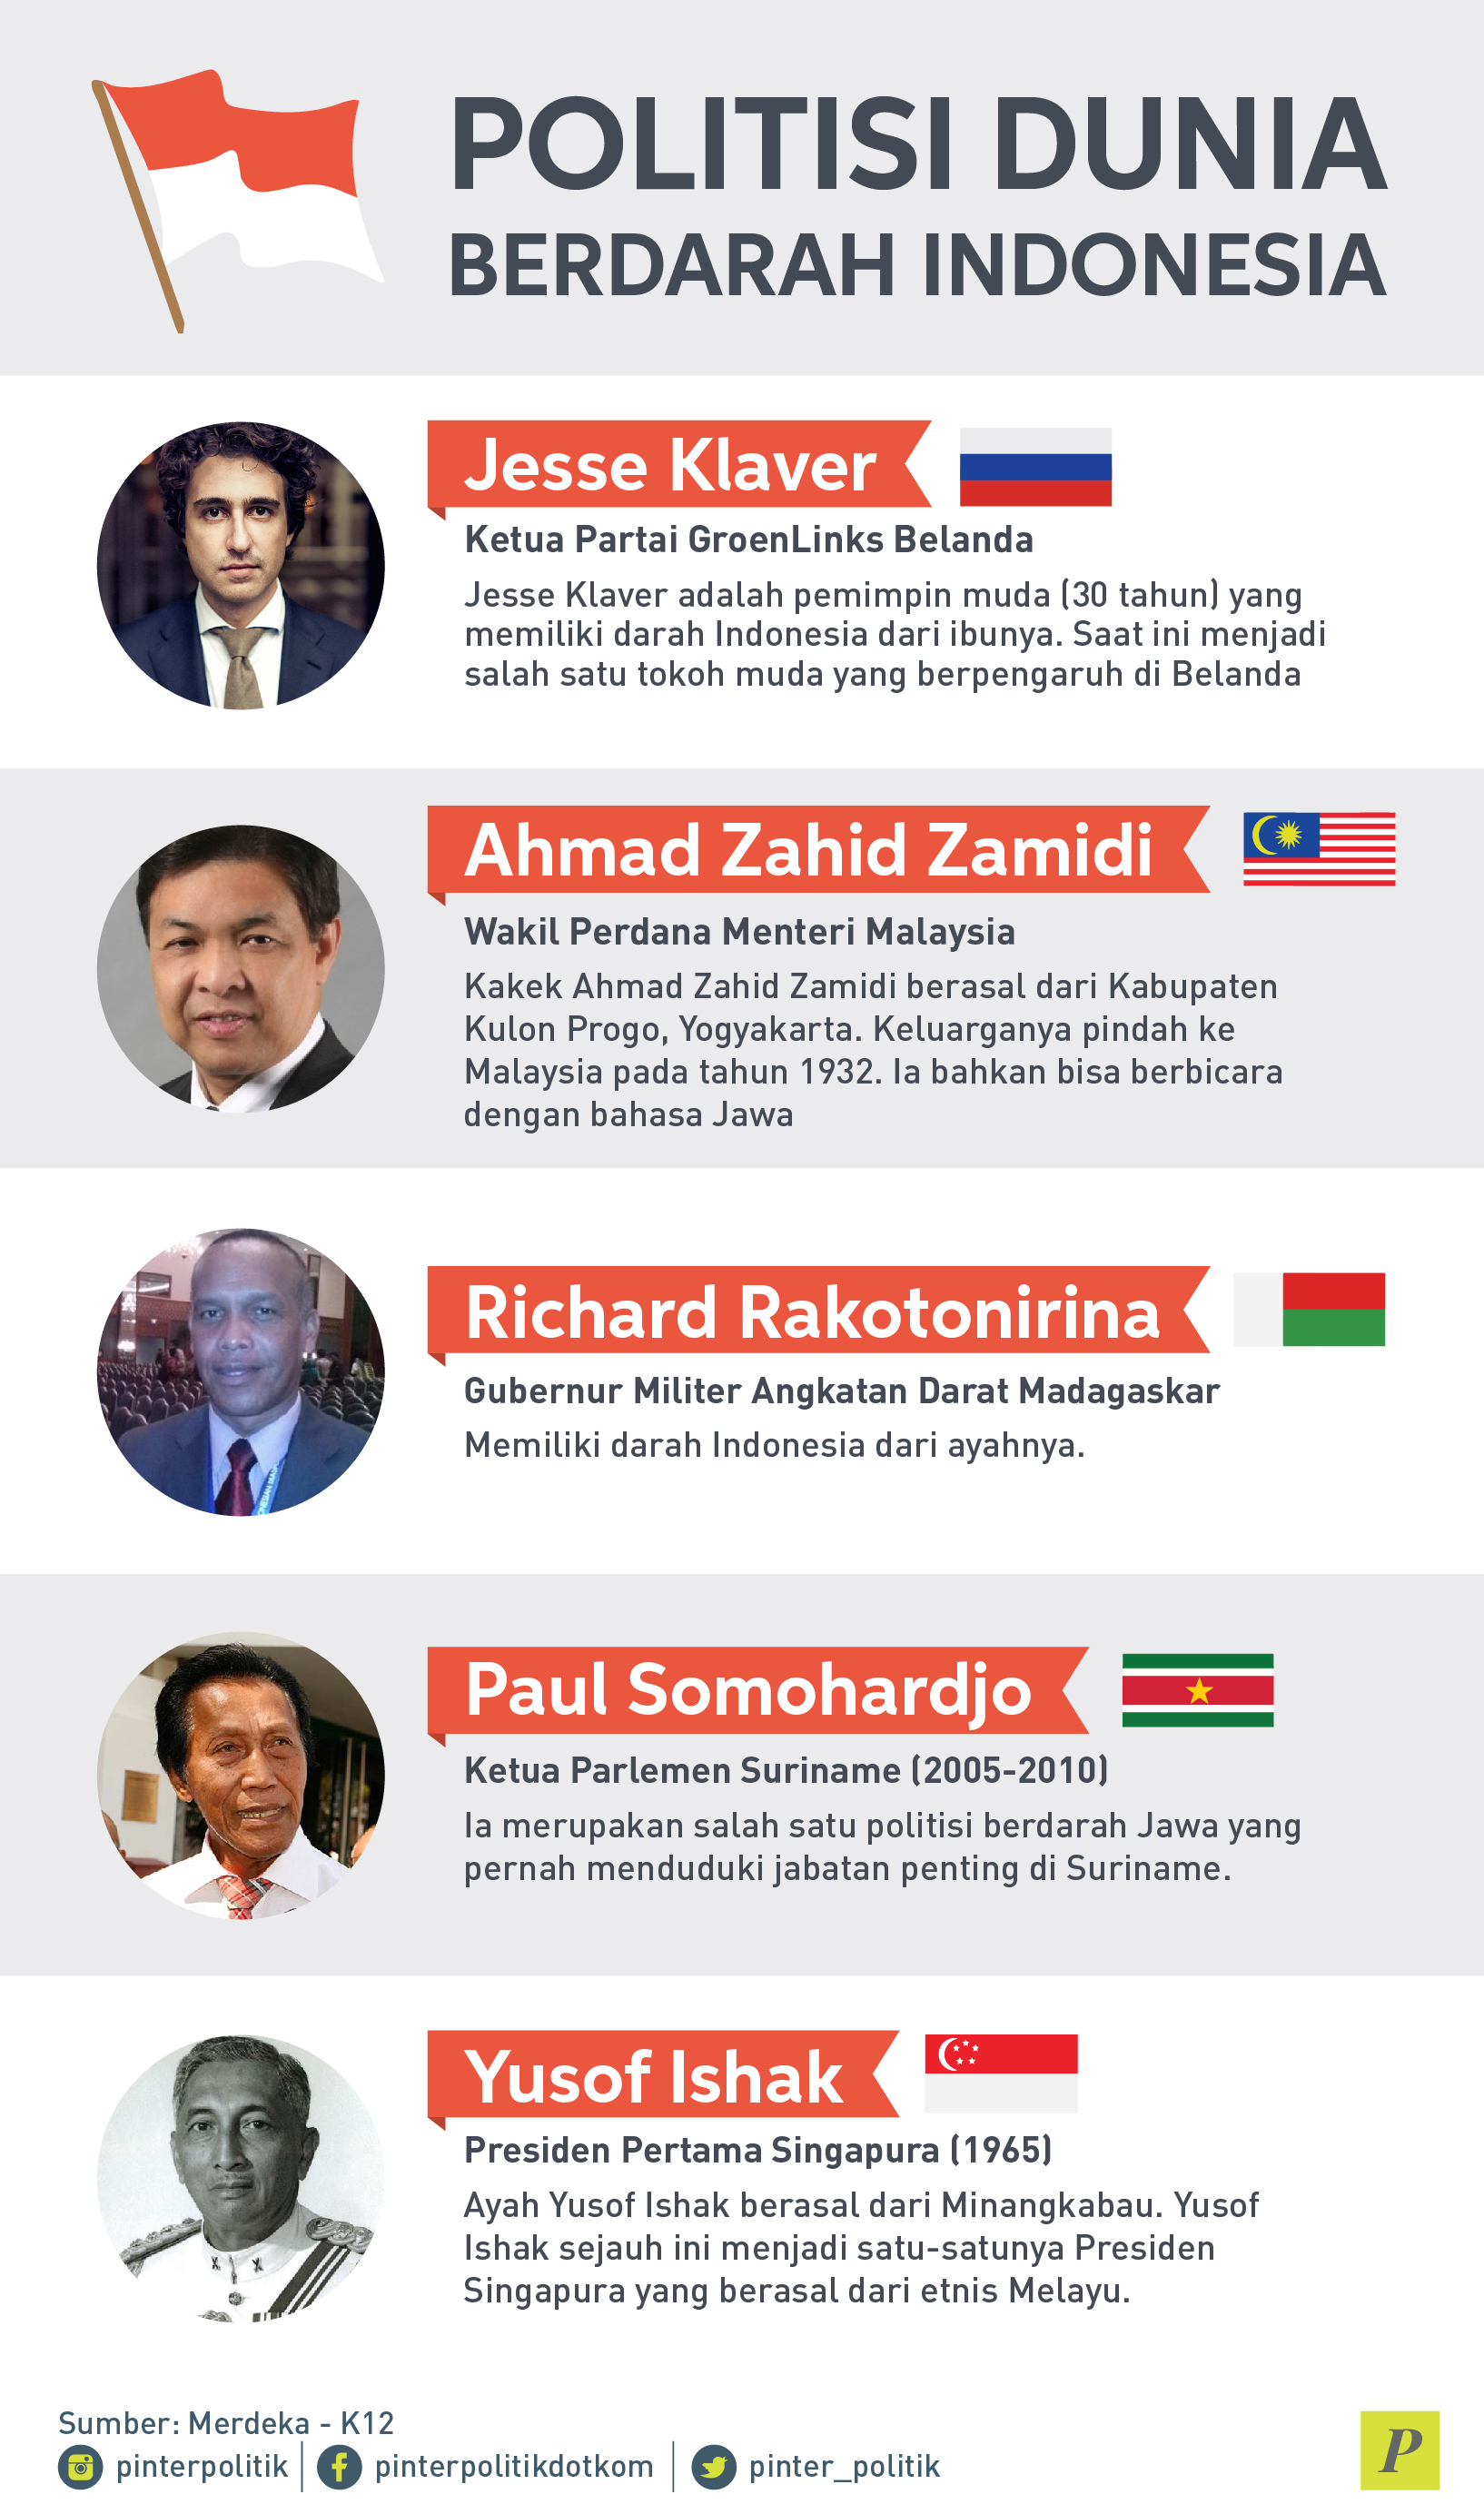 Politik Dunia Berdarah Indonesia